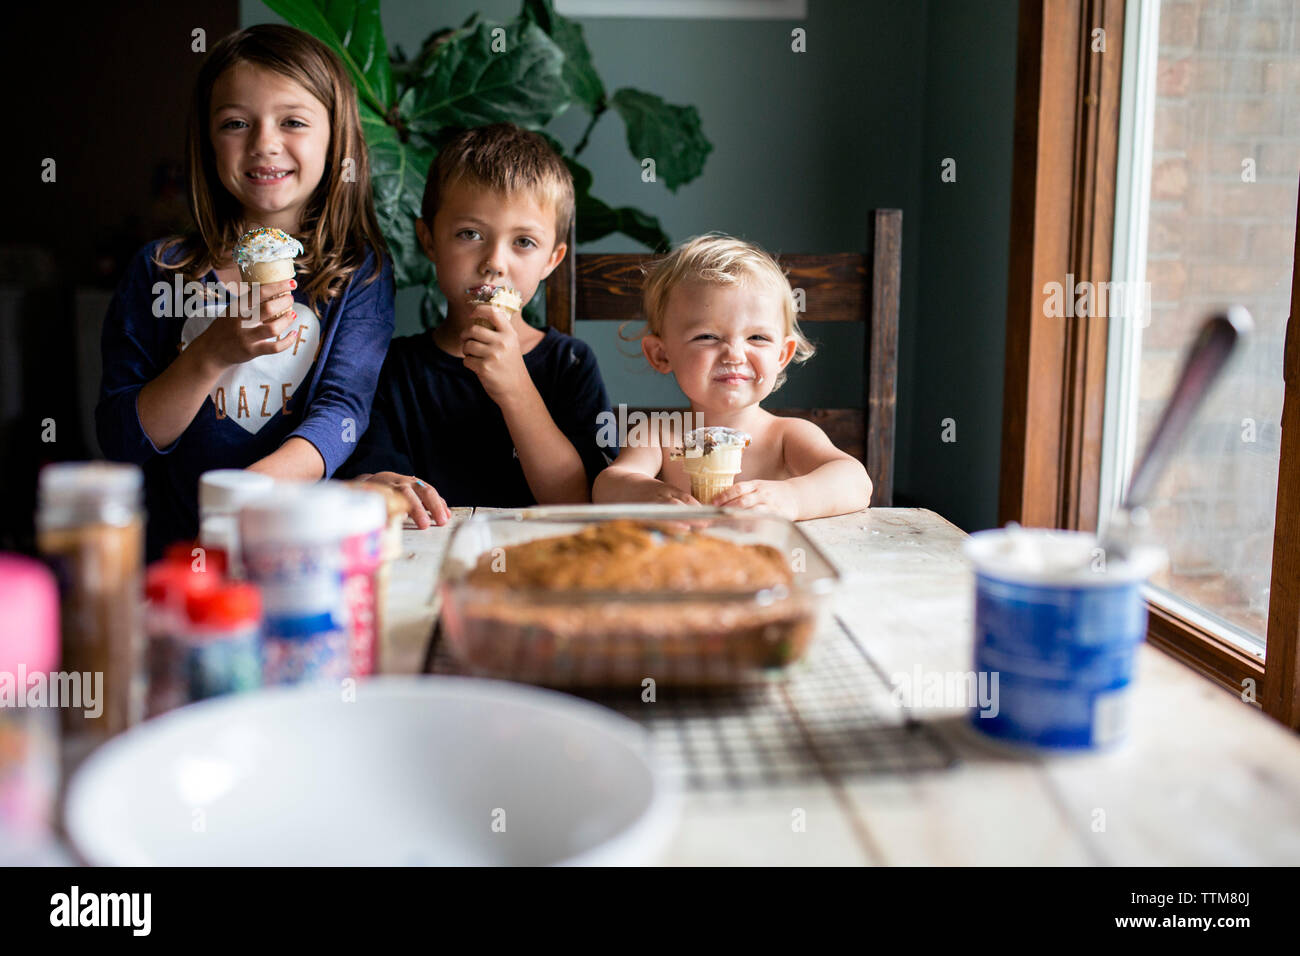 Tres jóvenes hermanos disfrutando la dulce horneado trata en interiores Foto de stock